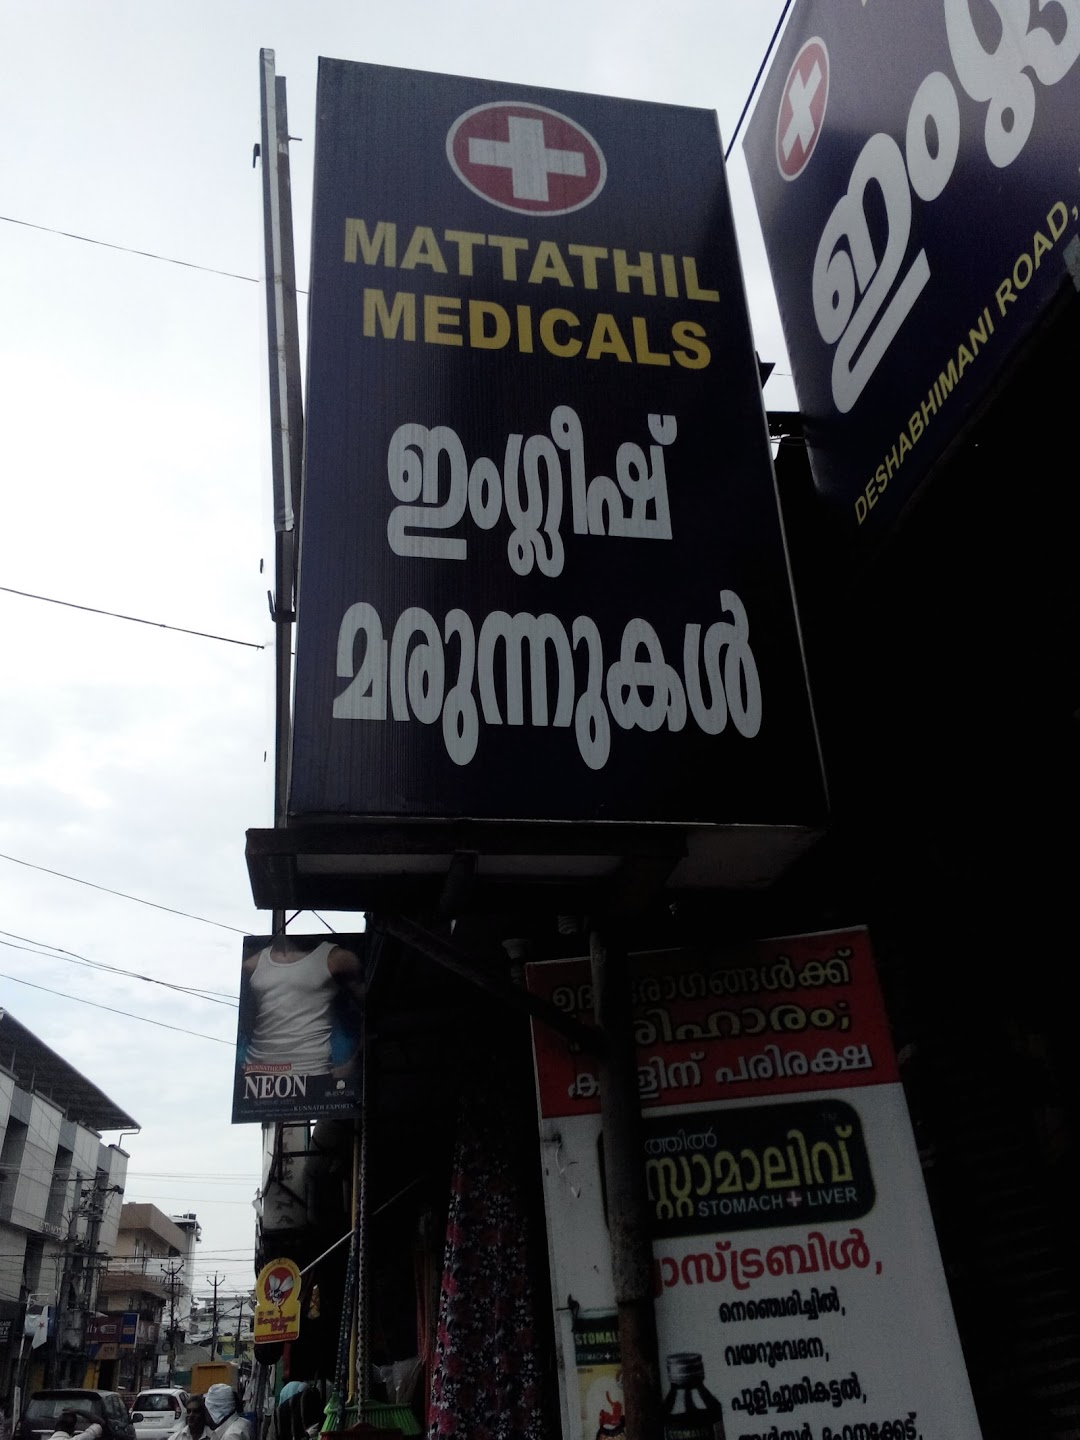 Mattathil Medicals